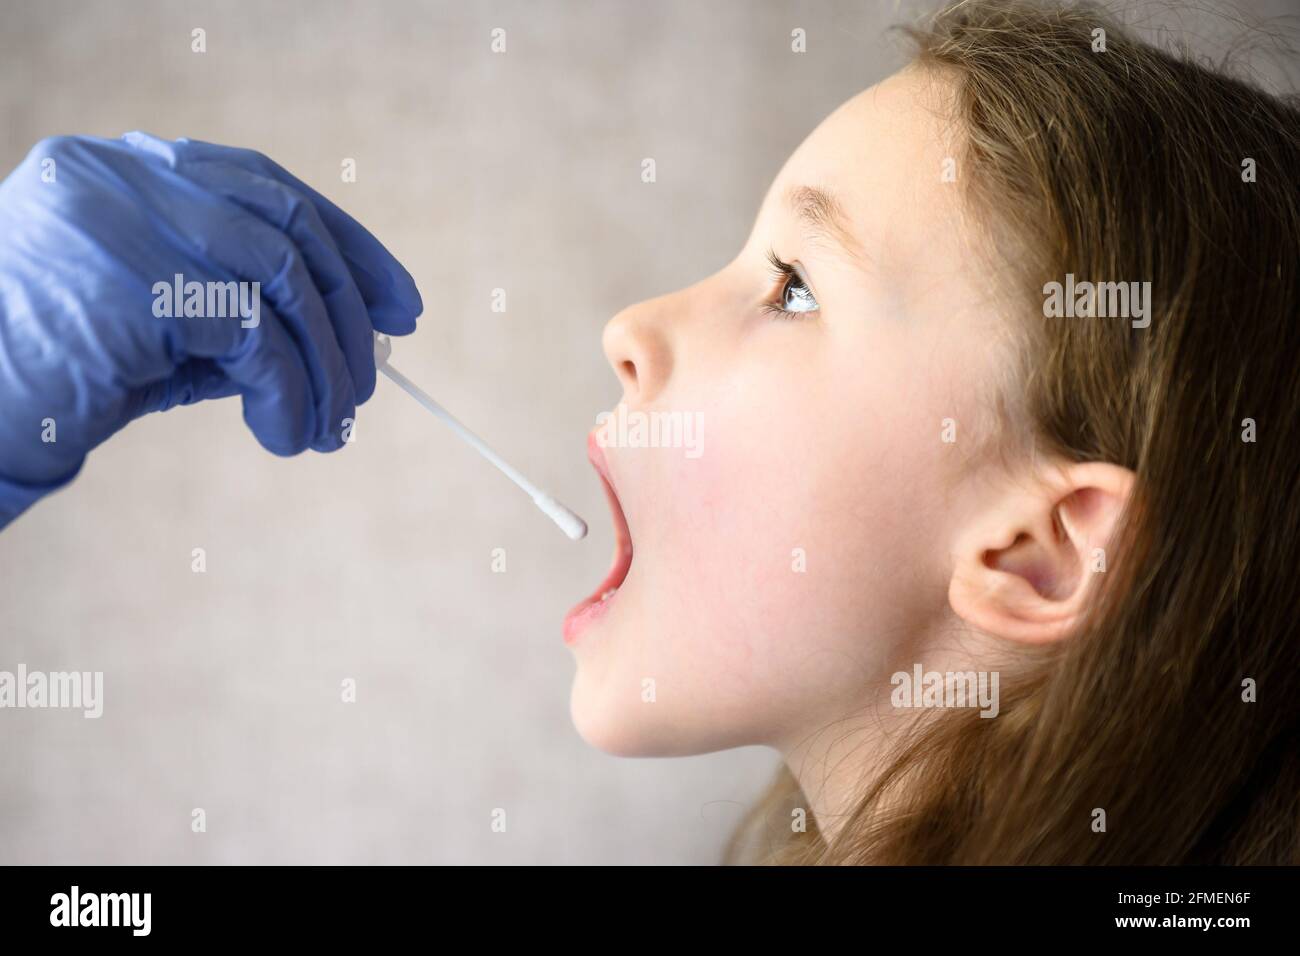 L'enfant ouvre la bouche pour le test PCR COVID-19, le médecin tient un écouvillon pour l'échantillon de salive de l'enfant mignon pendant la pandémie du coronavirus. Infirmière main et petite fille fac Banque D'Images